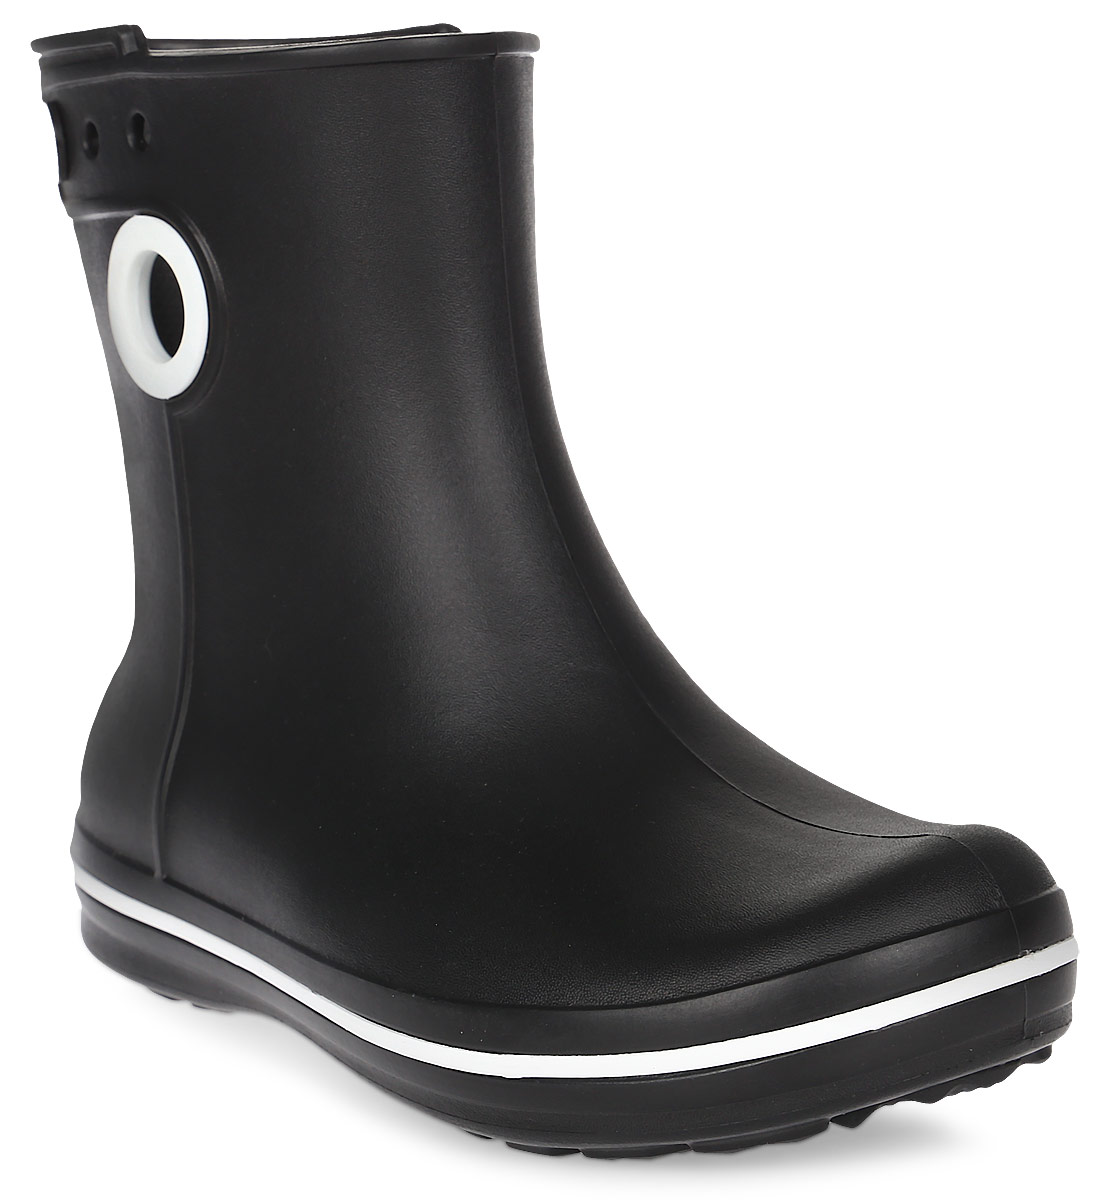 Полусапоги резиновые женские Crocs Jaunt Shorty Boot, цвет: черный. 15769-001. Размер 8 (38)